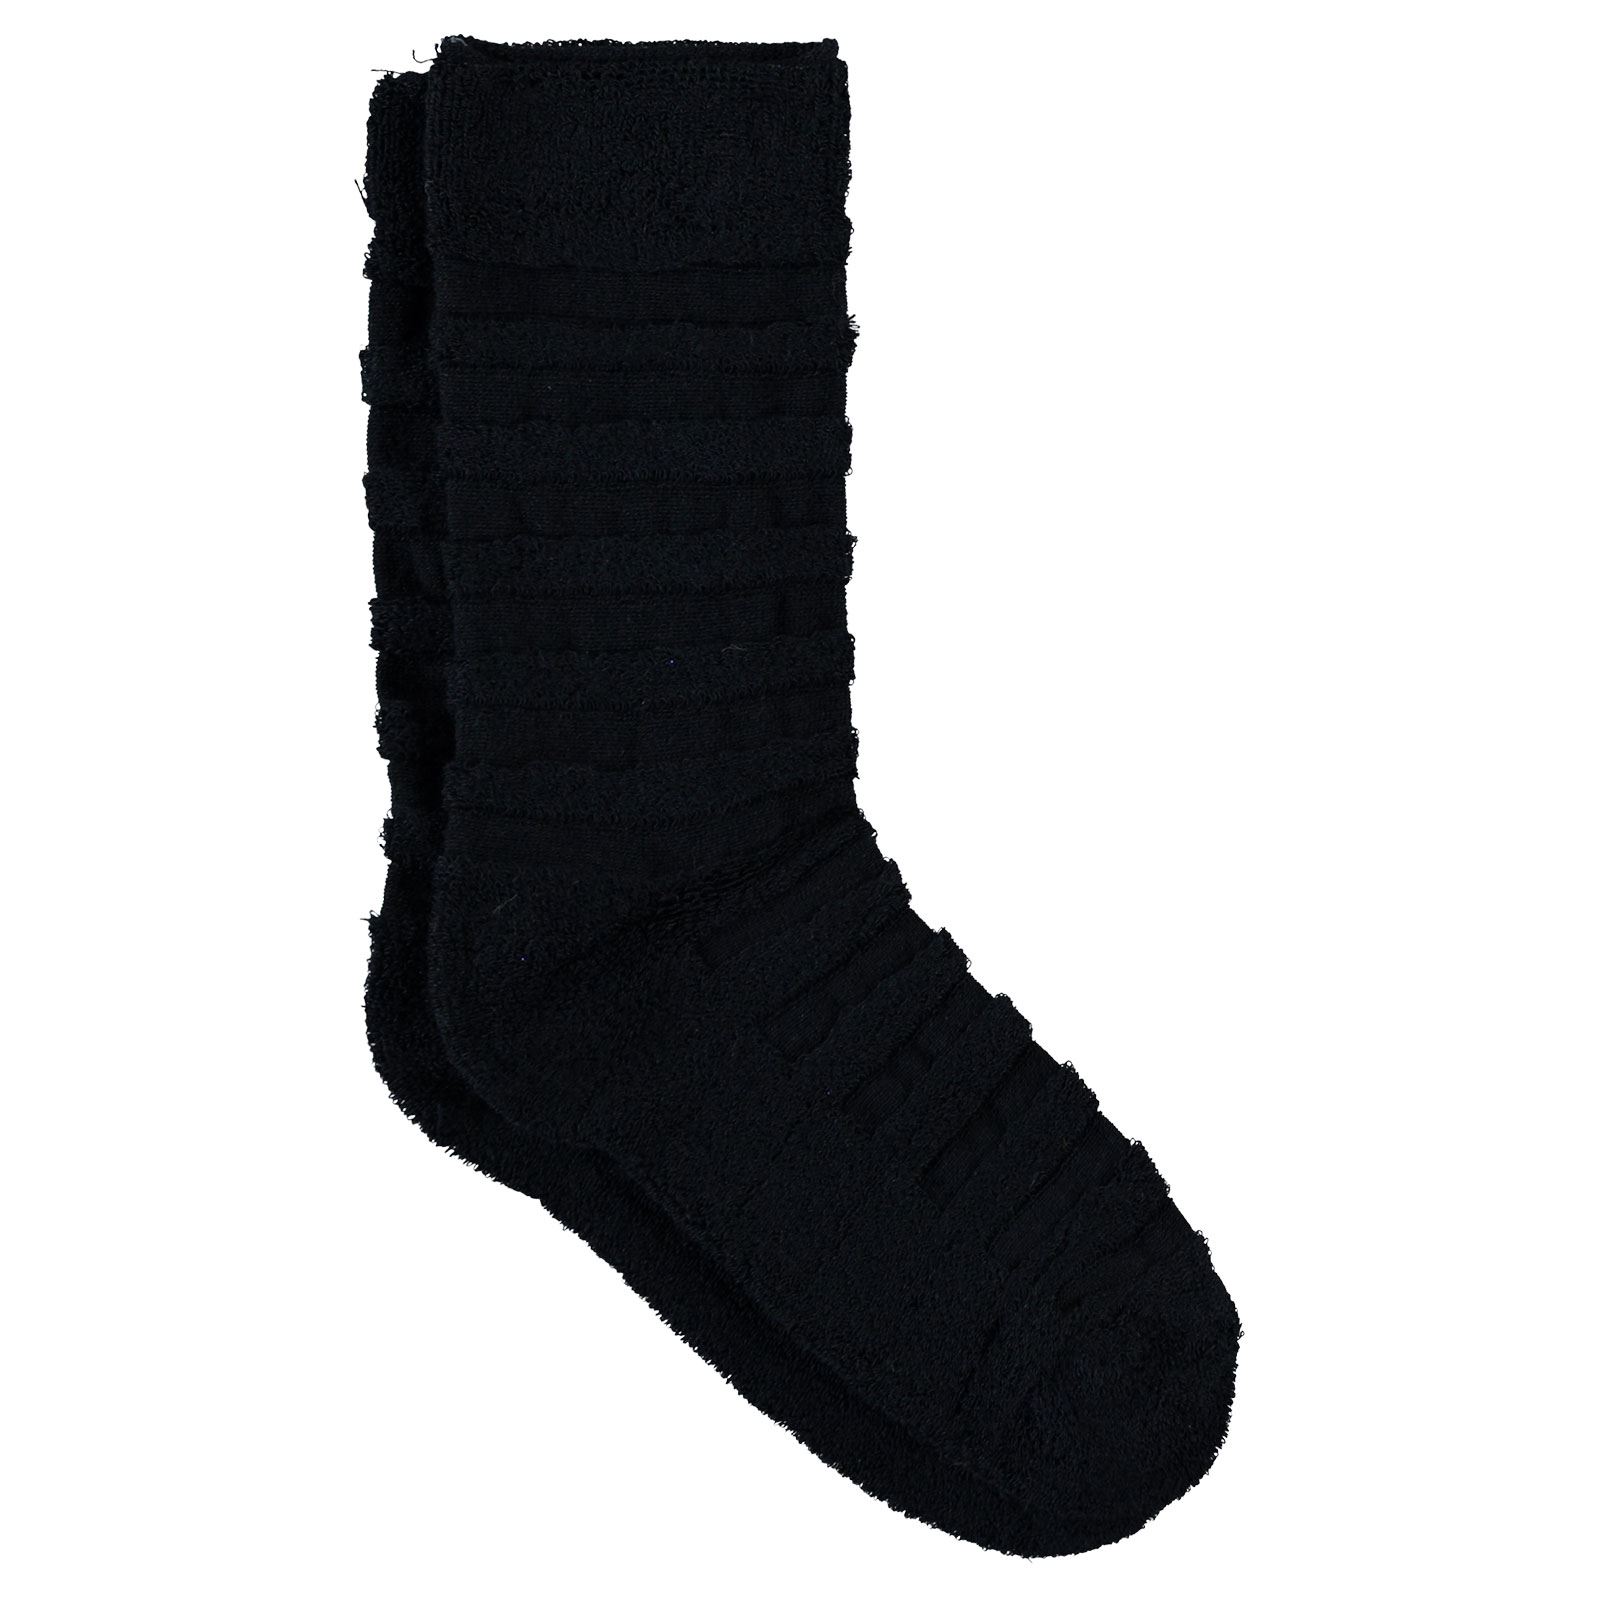 Bella Calze Kız Çocuk Ters Havlu Soket Çorap 36-40 Numara Lacivert